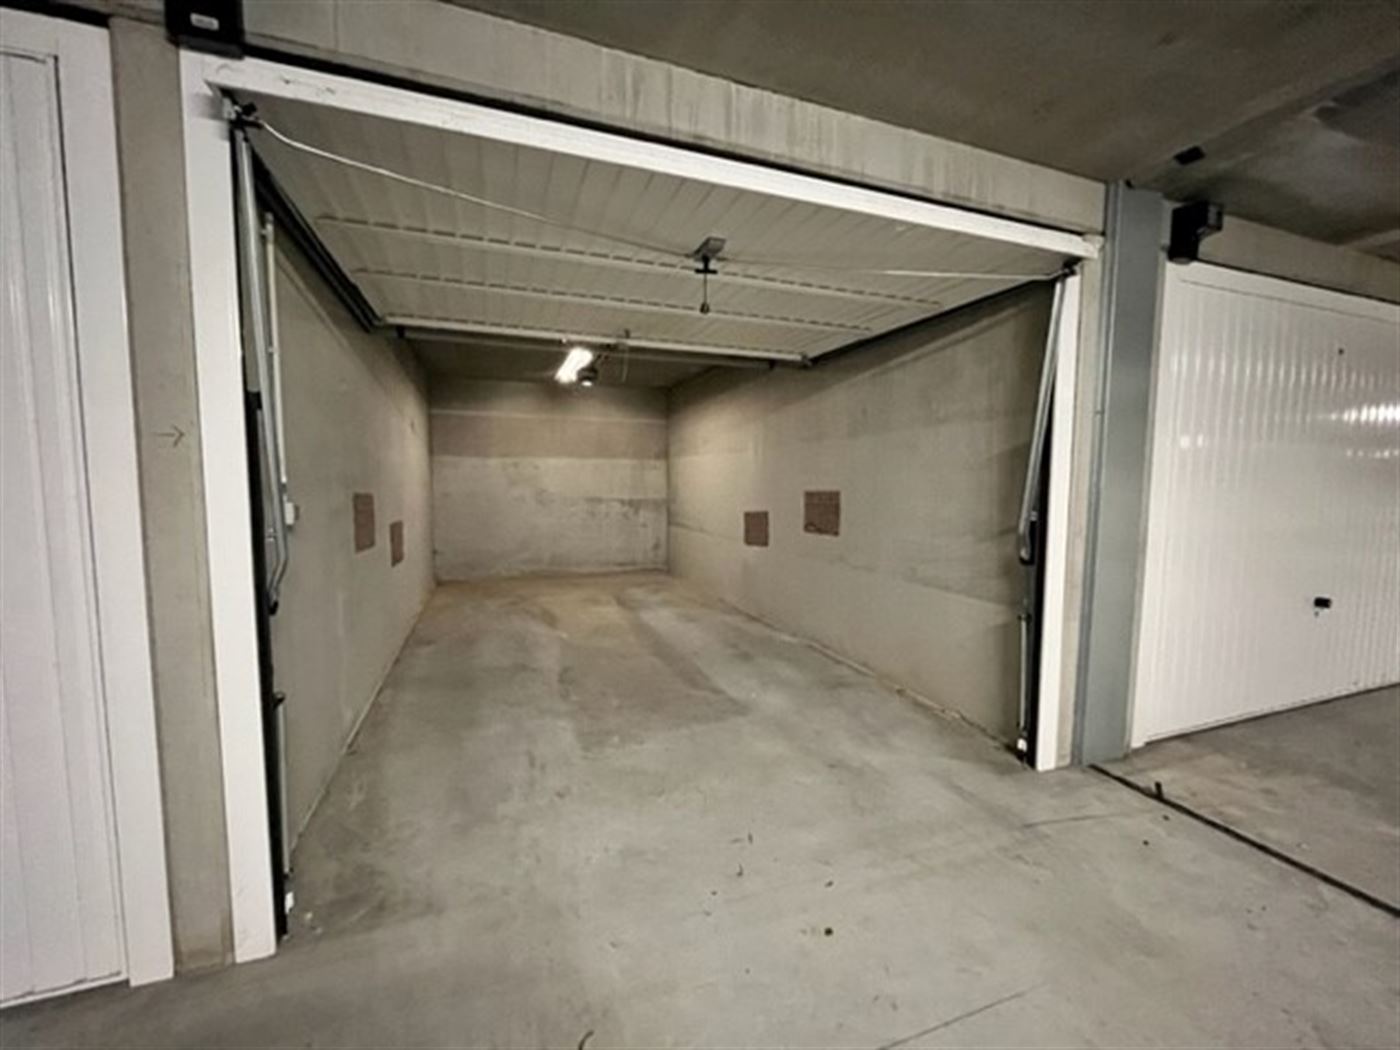 FRANSLAAN GARAGE 1078 - Gesloten garagebox in de Franslaan - Gelegen op niveau -1 van het garagecomplex - Personenlift aanwezig - Volle eigendom - Gea...